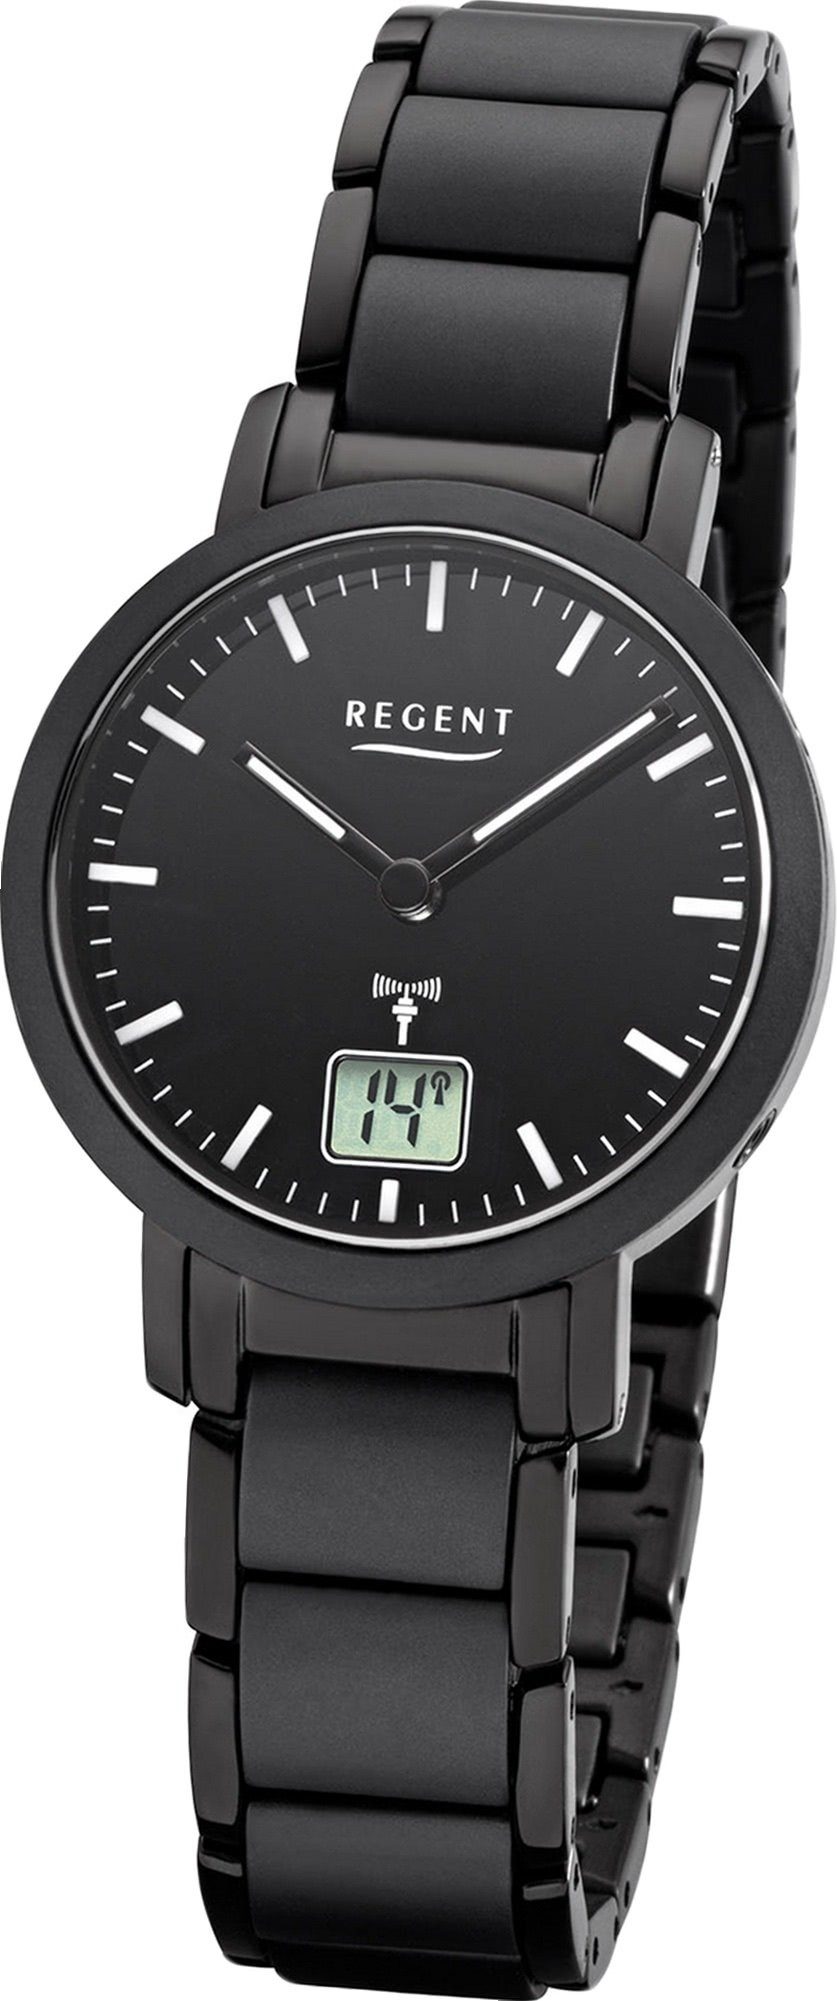 Regent Funkuhr Regent Metall Damen Uhr FR-266, Damenuhr Metallarmband schwarz, rundes Gehäuse, klein (ca. 30mm)